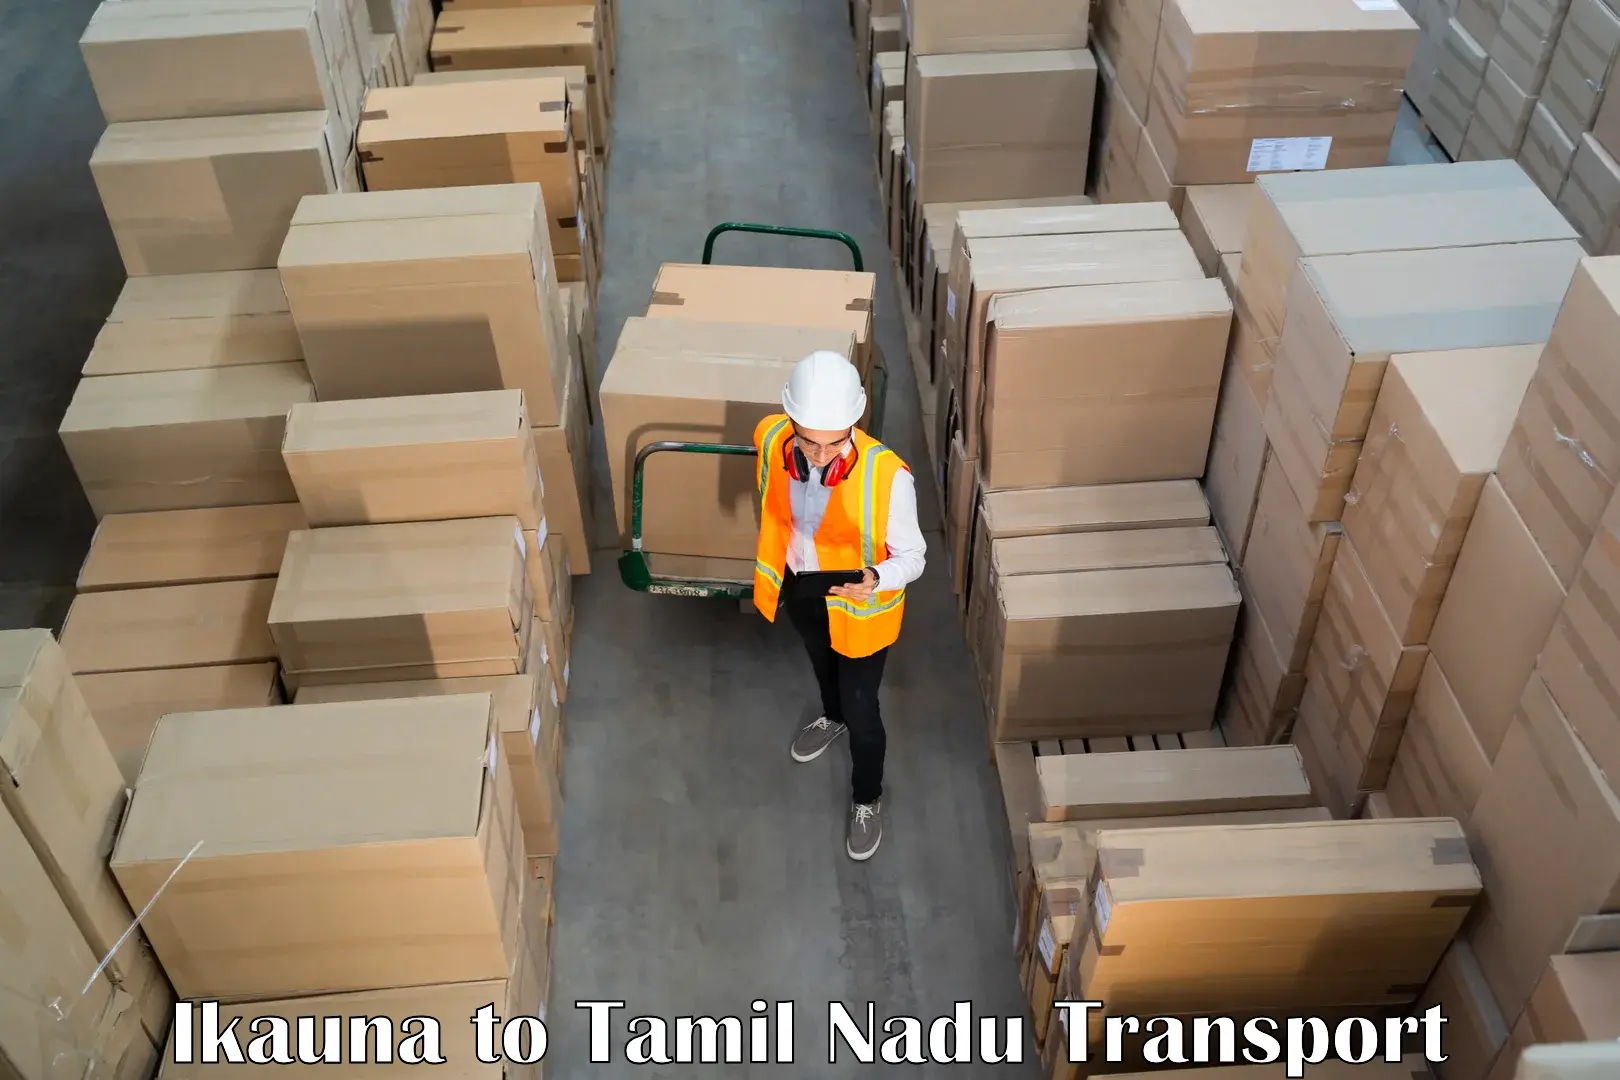 Furniture transport service Ikauna to Kangeyam